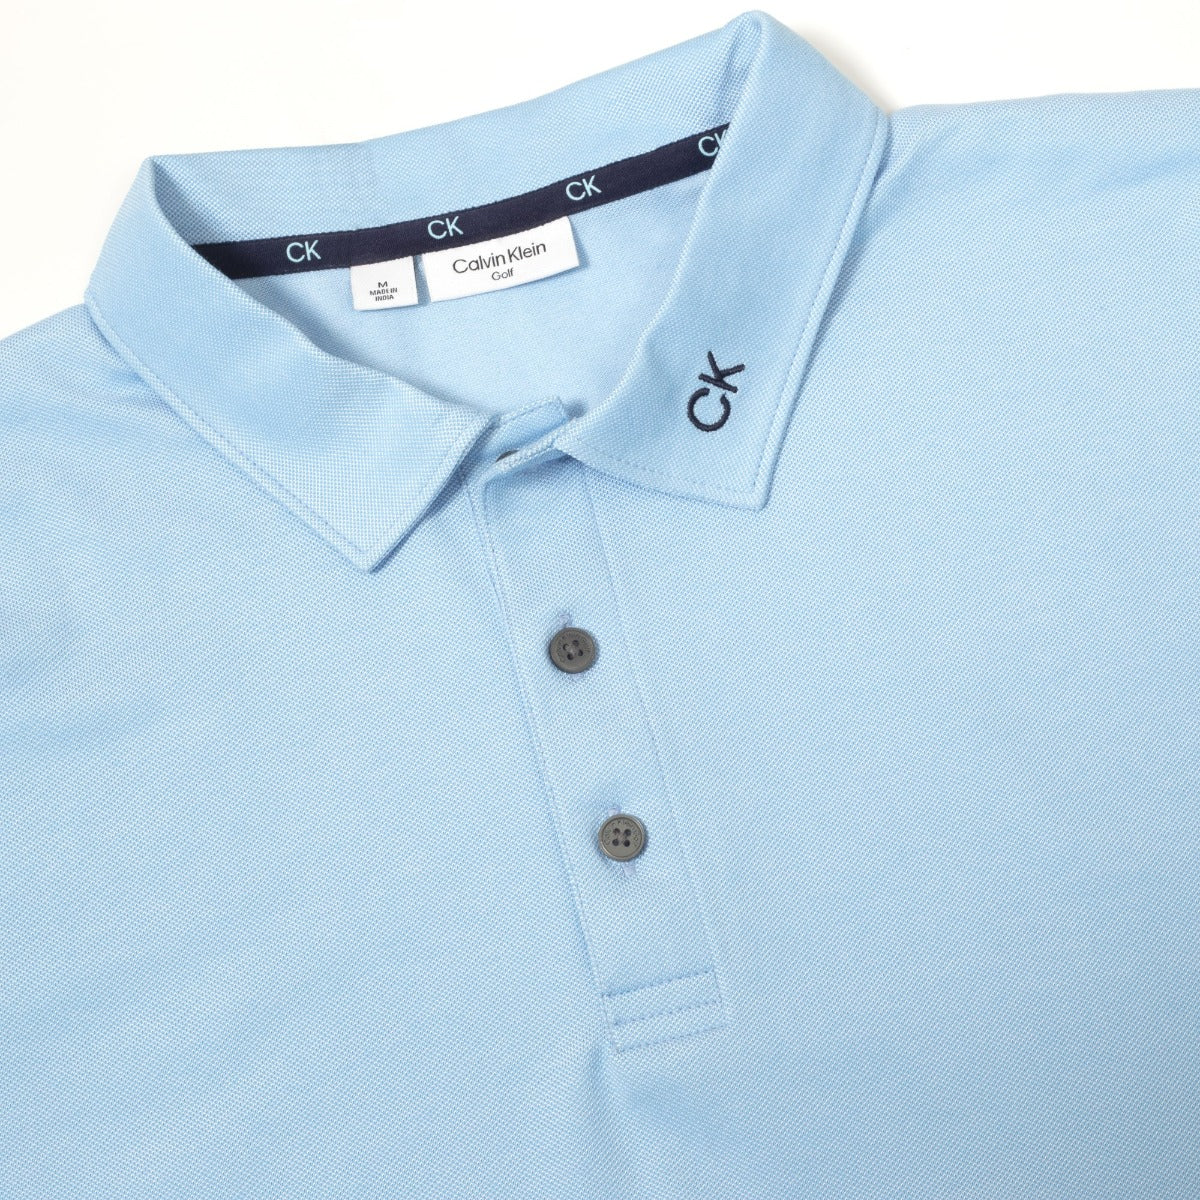 Calvin Klein Concord Polo Shirt Men's (CKMS23 747)